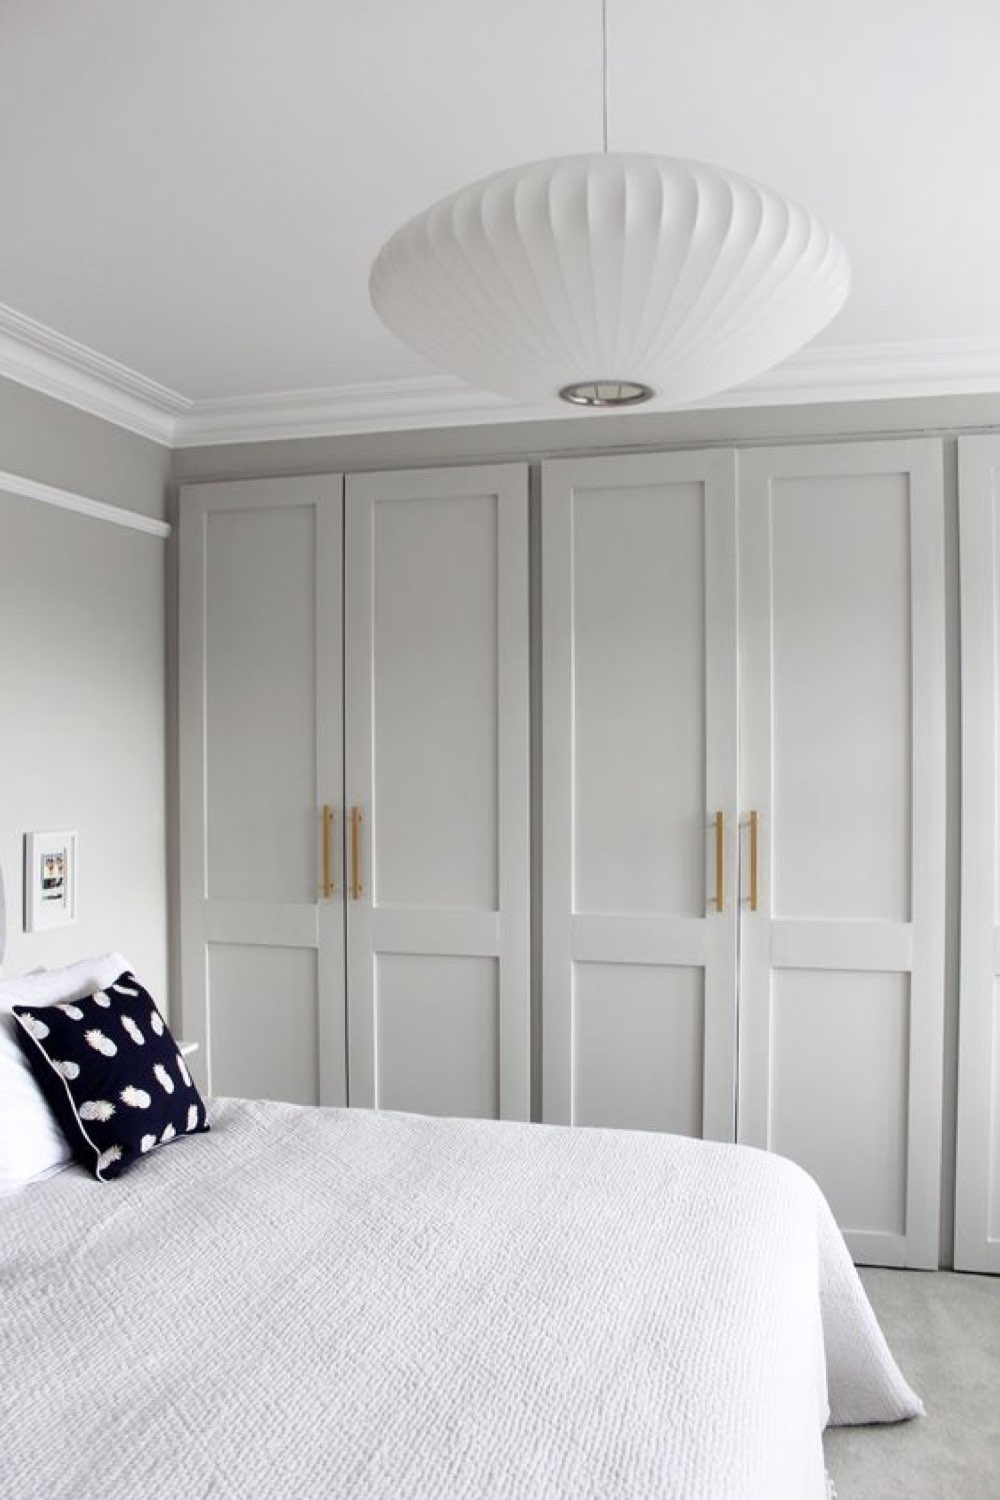 chambre adulte decoration reussie exemple peinture porte de placard couleur gris clair douceur harmonie 